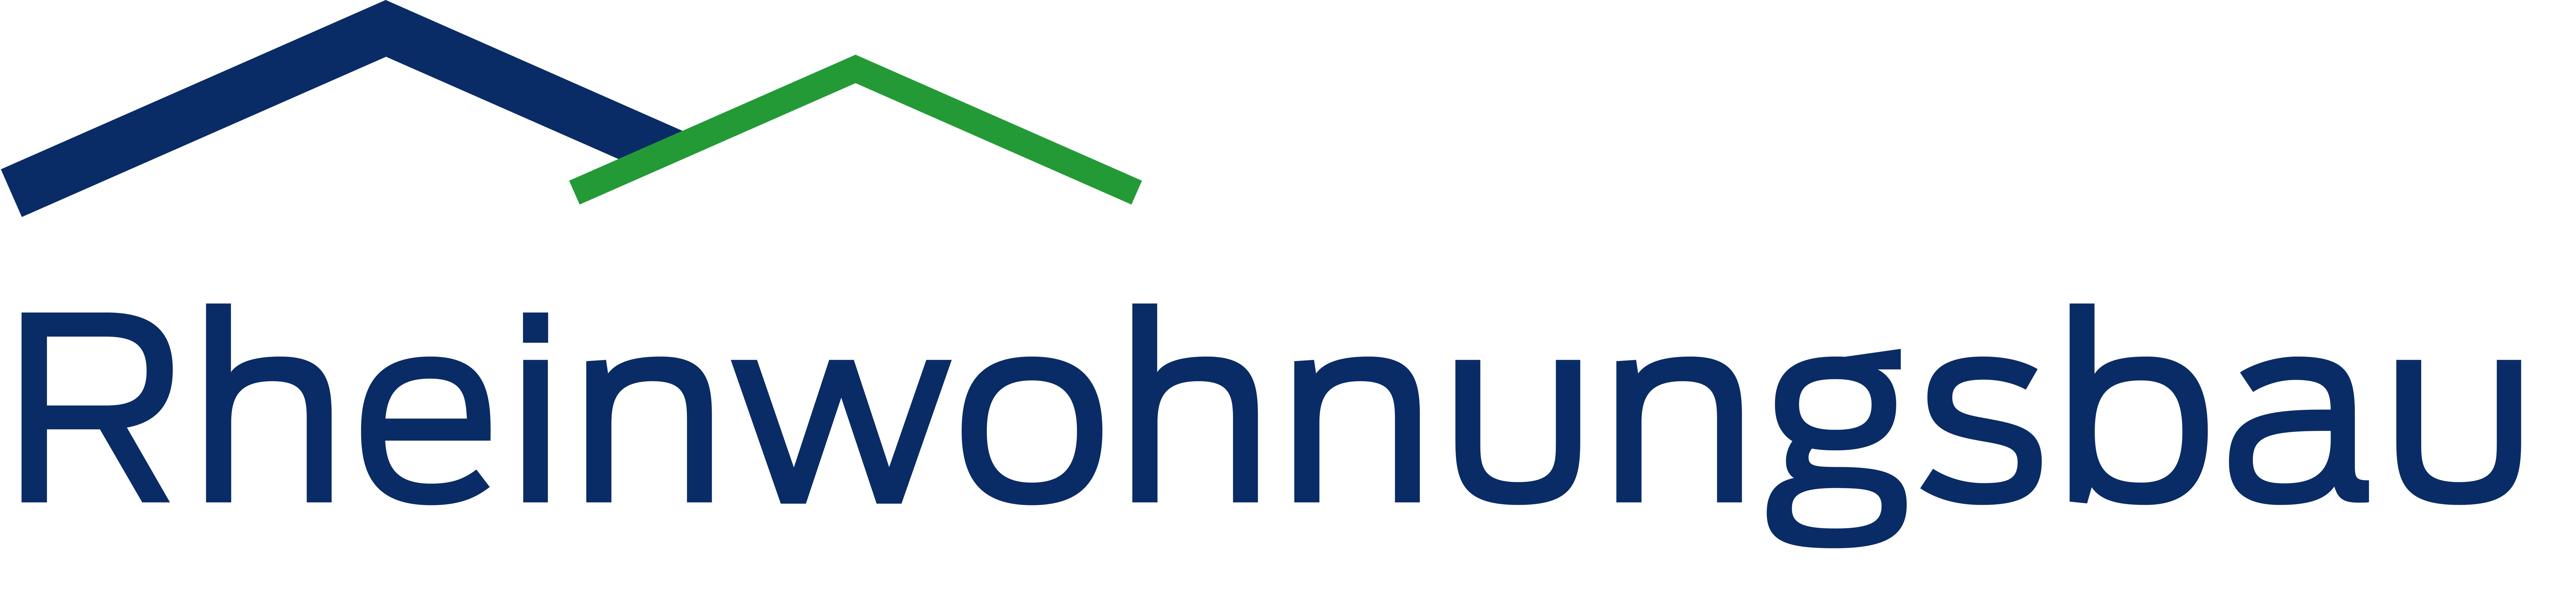 Rheinwohnungsbau GmbH